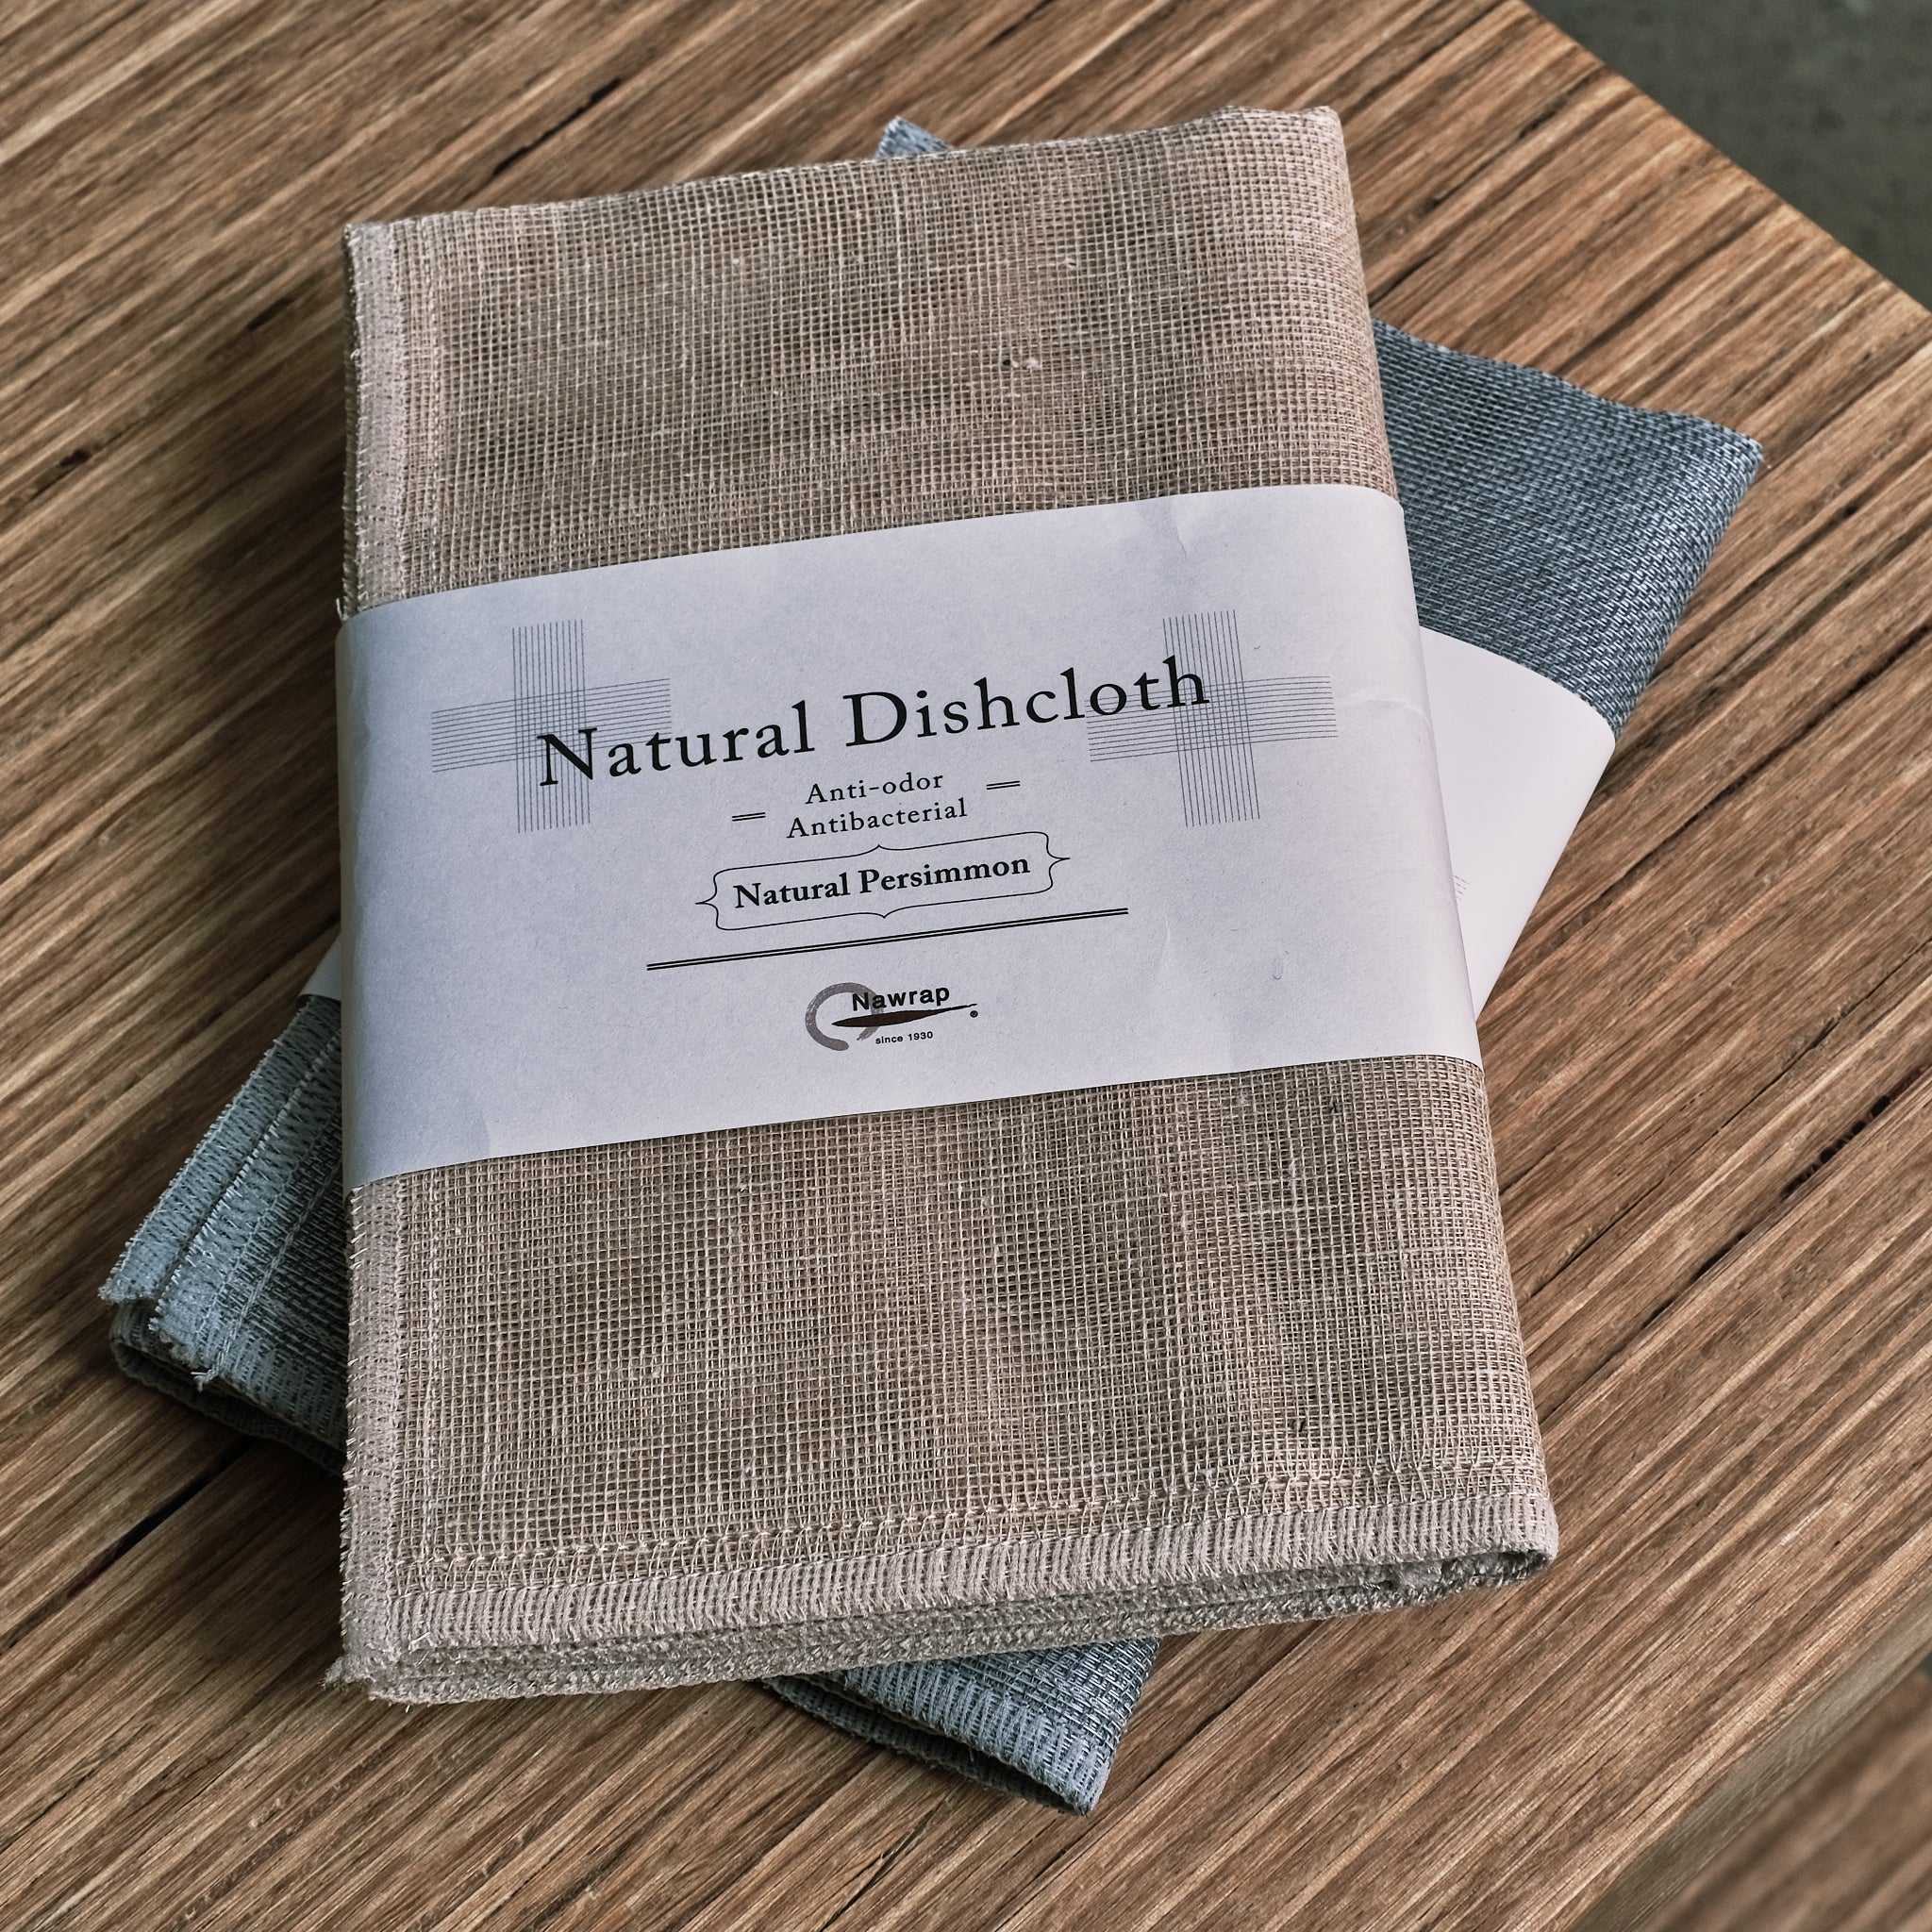 NAWRAP Natural Dishcloth Linen exclusive at